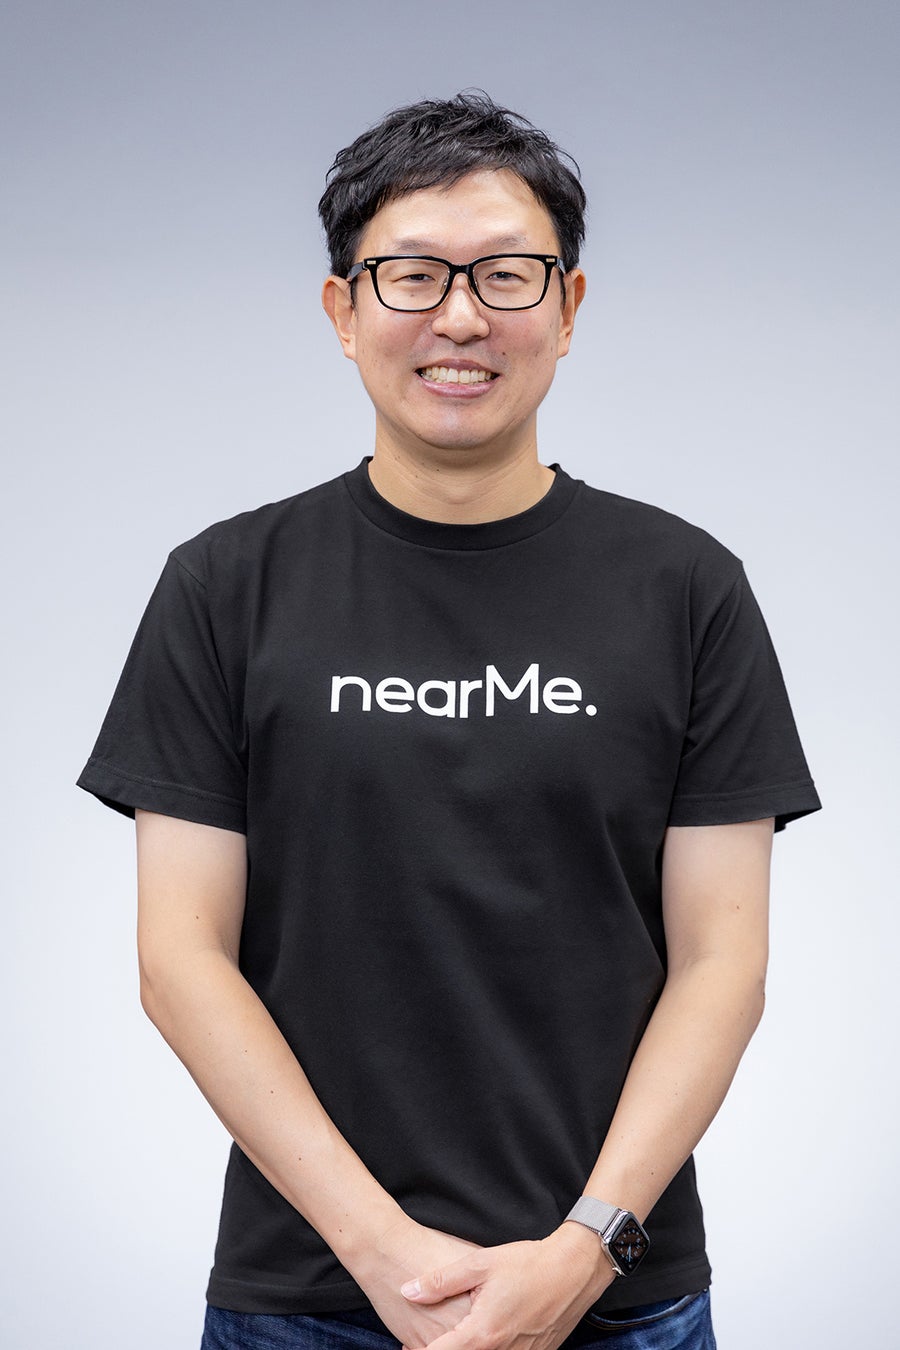 NearMe、シリーズBラウンドとして約13億円を資金調達のサブ画像10